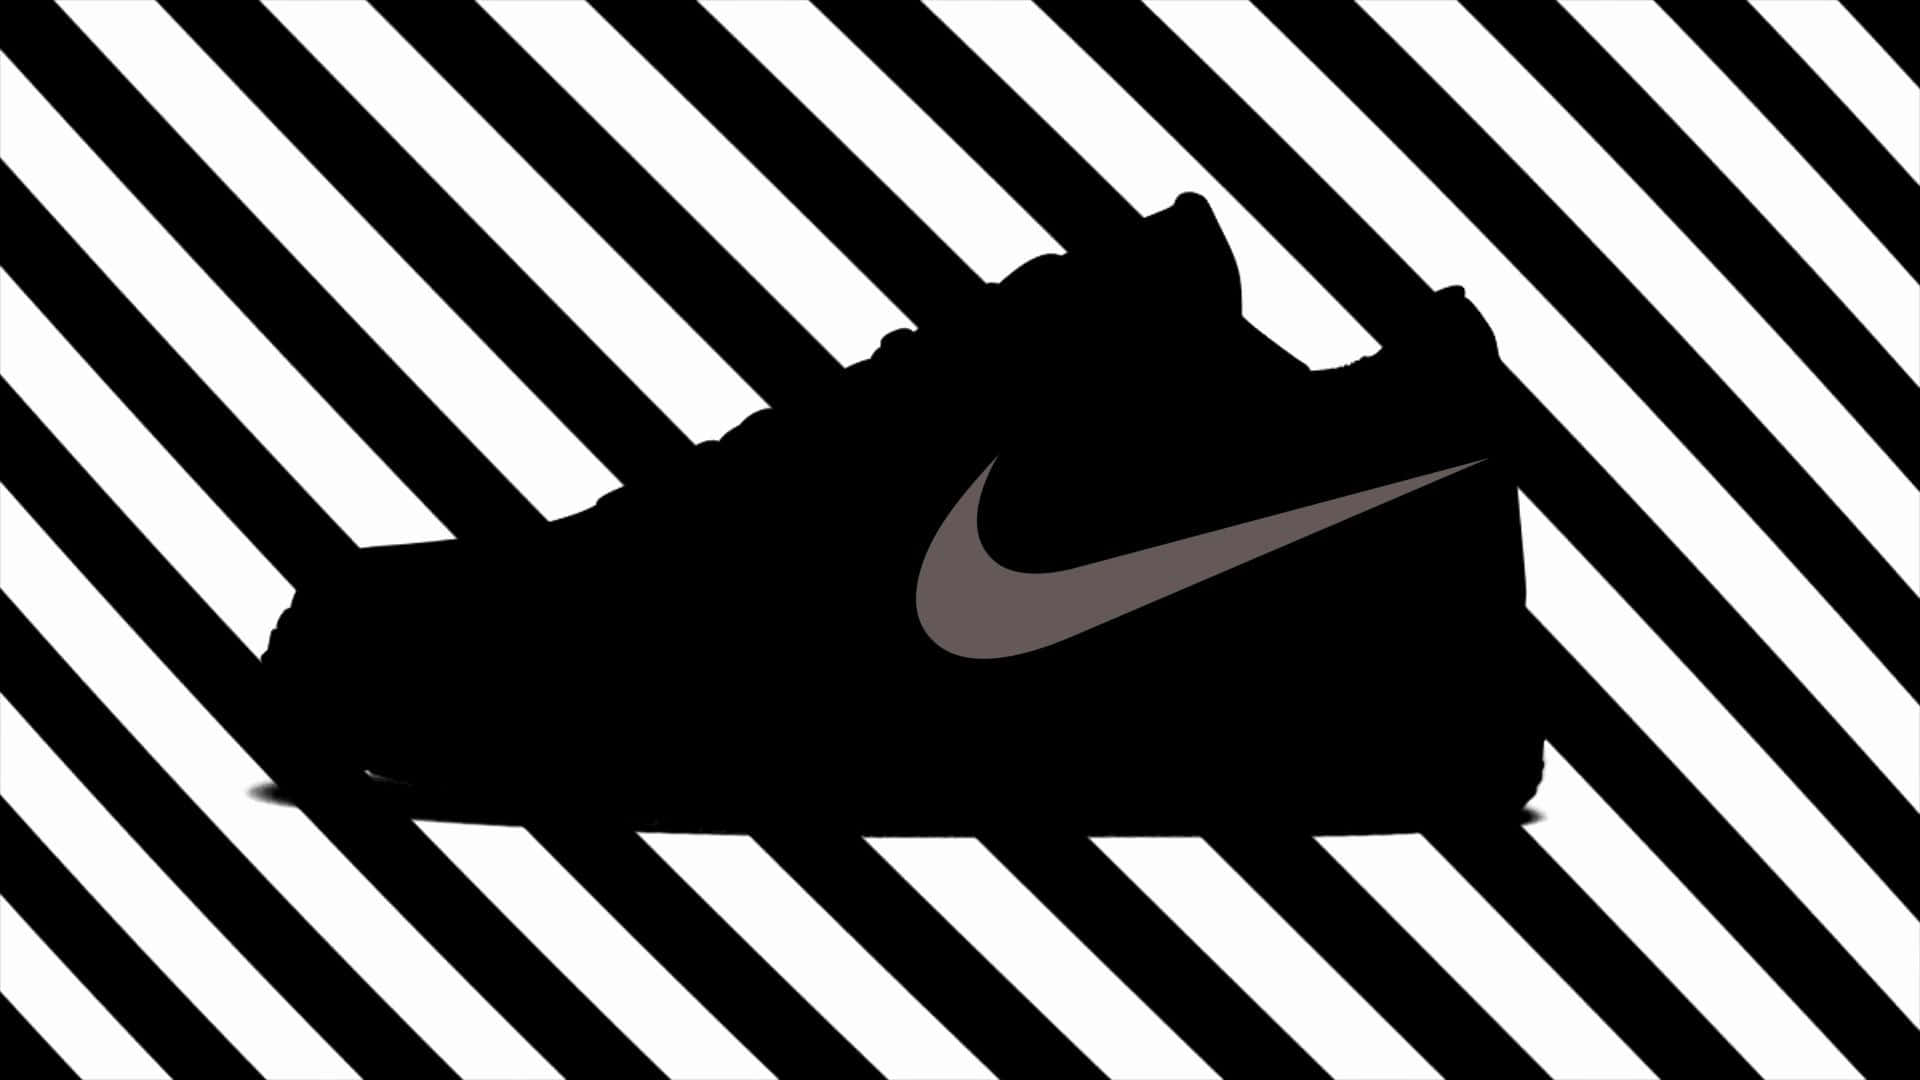 Nikeair Force 1 Silhouette Auf Einem Schwarz-weiß Gestreiften Hintergrund. Wallpaper